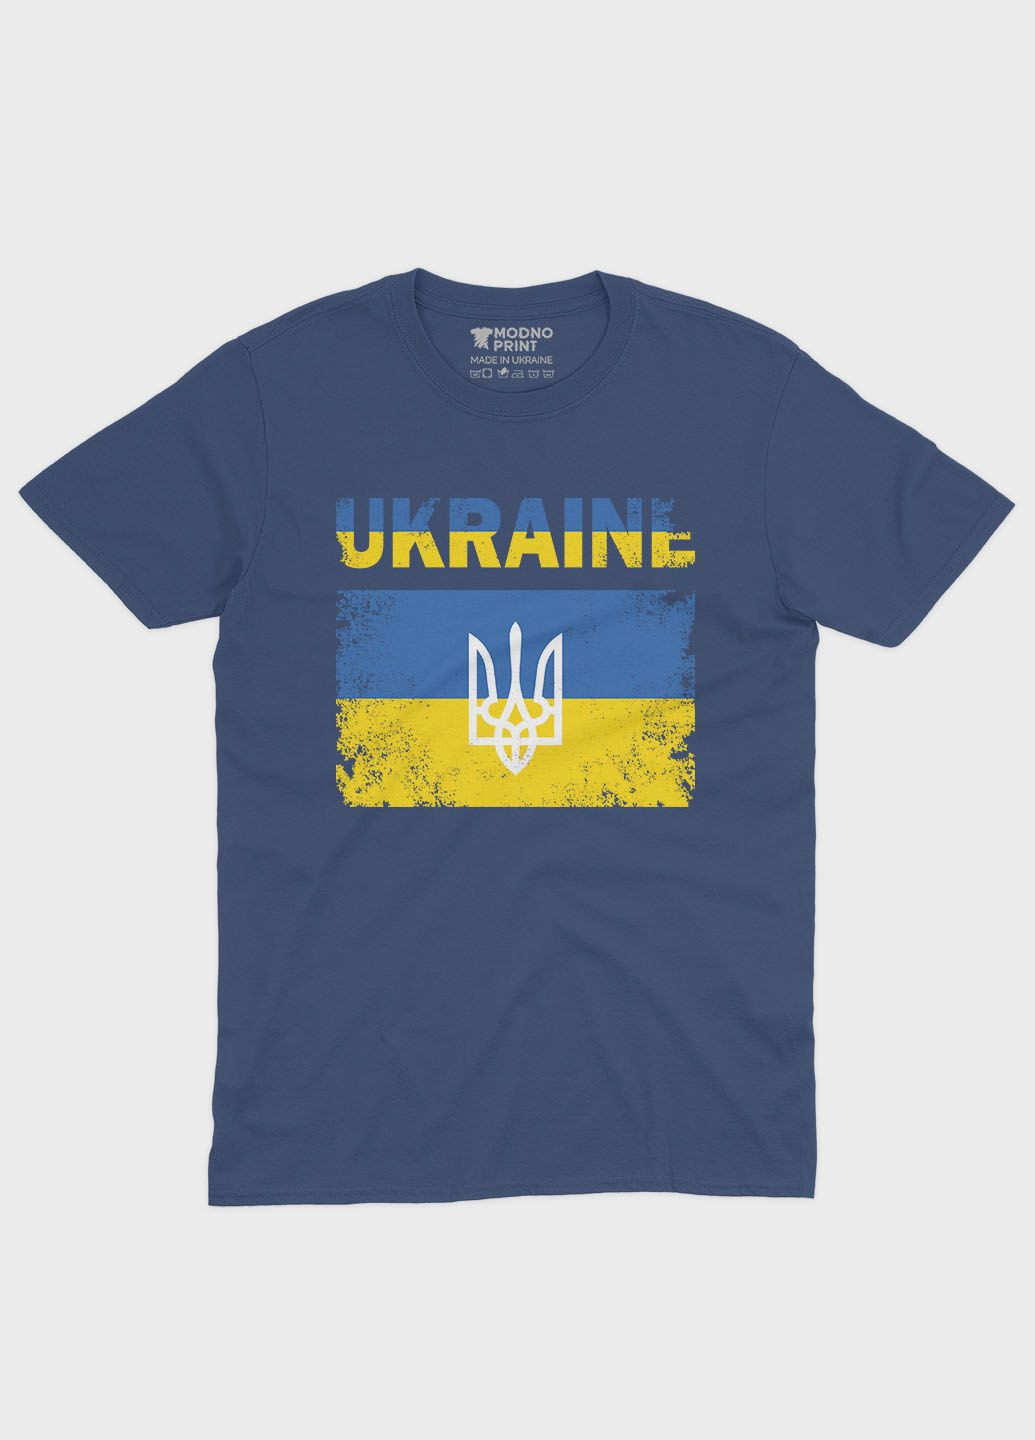 Темно-синяя демисезонная футболка для мальчика с патриотическим принтом ukraine (ts001-2-nav-005-1-044-b) Modno